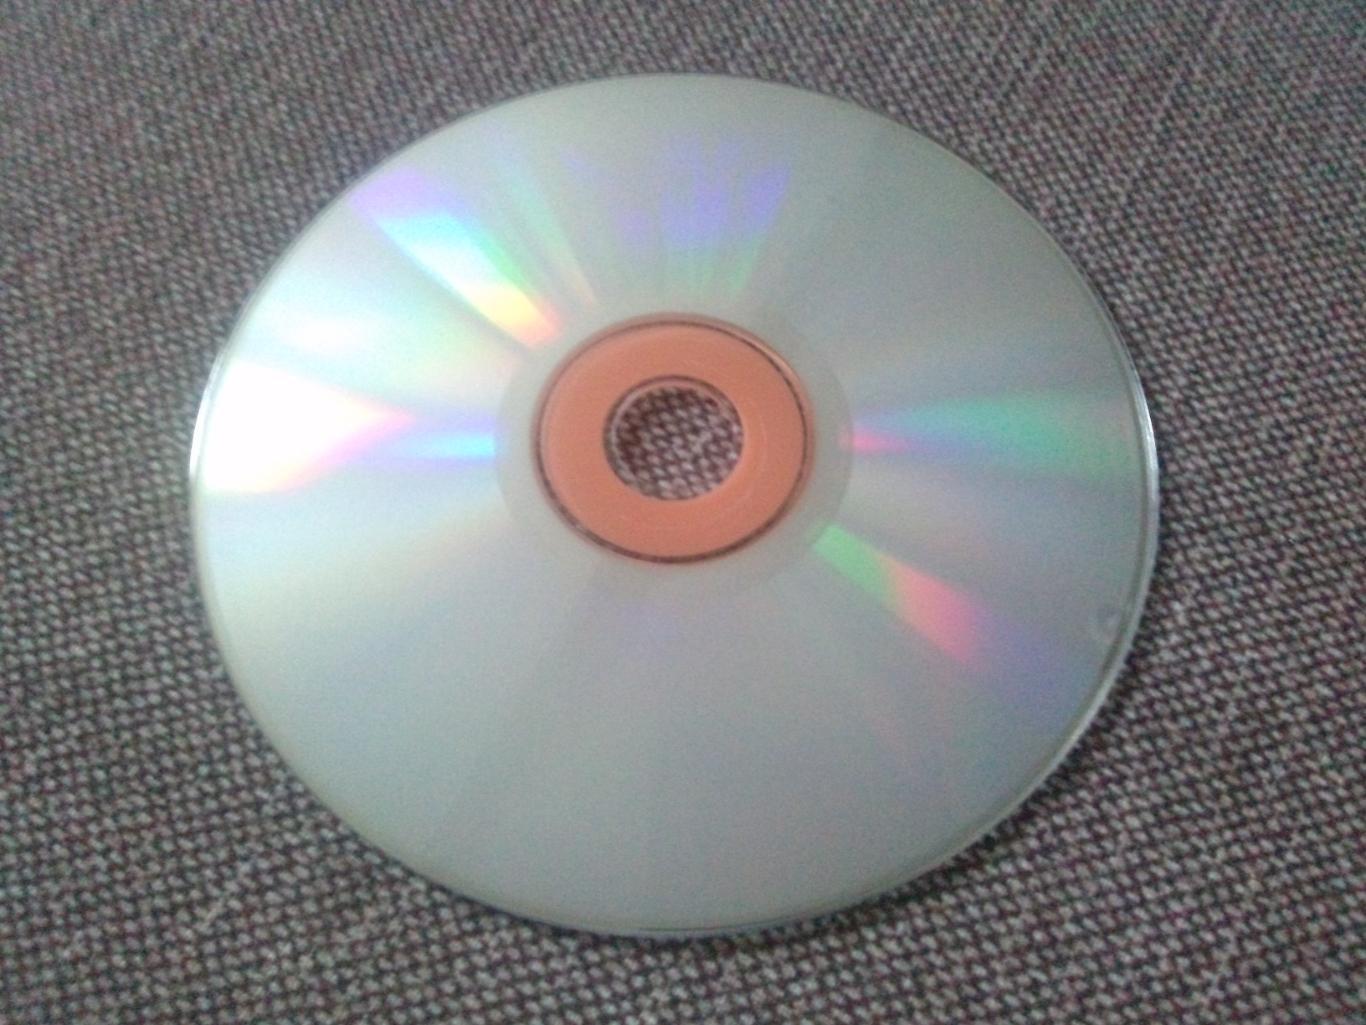 MP - 3 CD диск : Эдвард Элгар (1857 - 1934 гг.) Классическая музыка (лицензия) 5